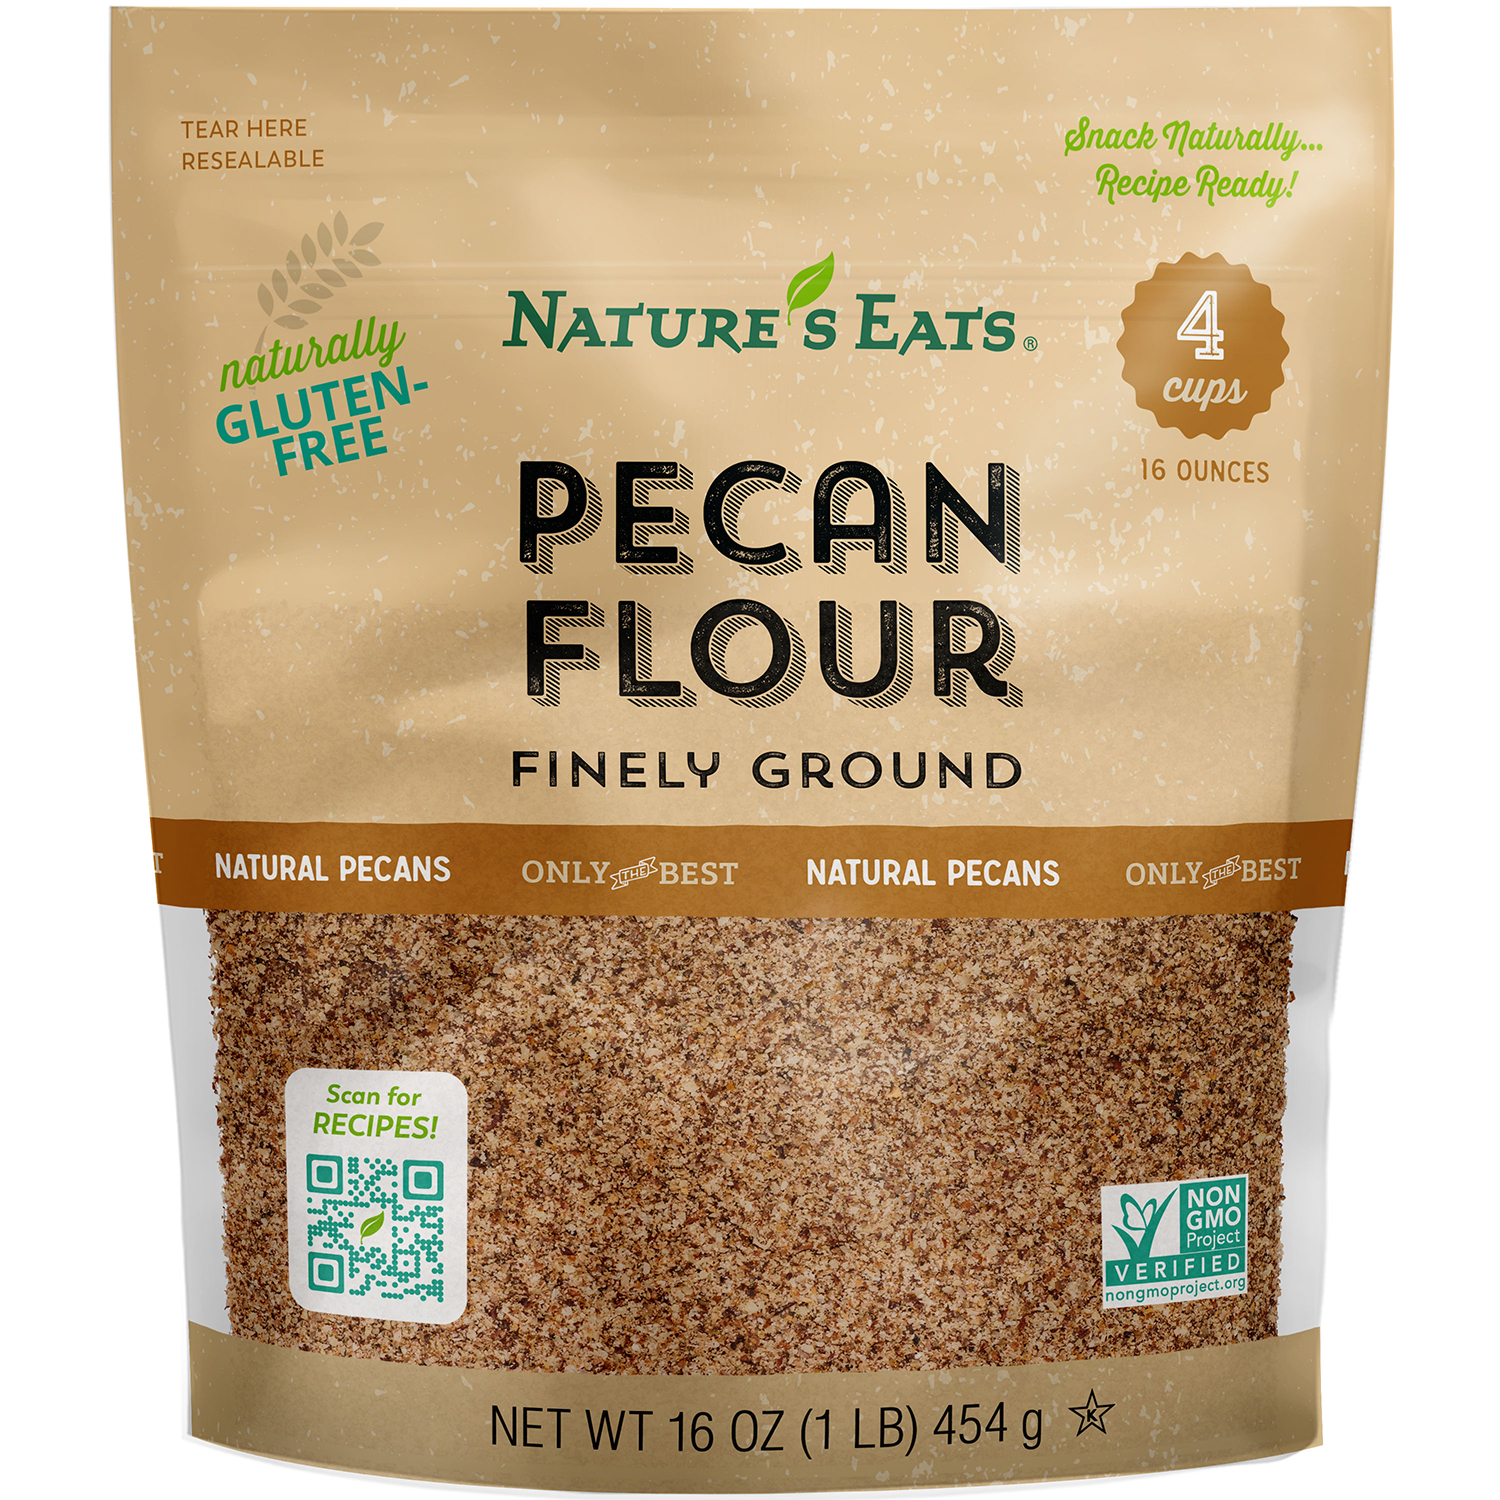 Natural Pecan Flour